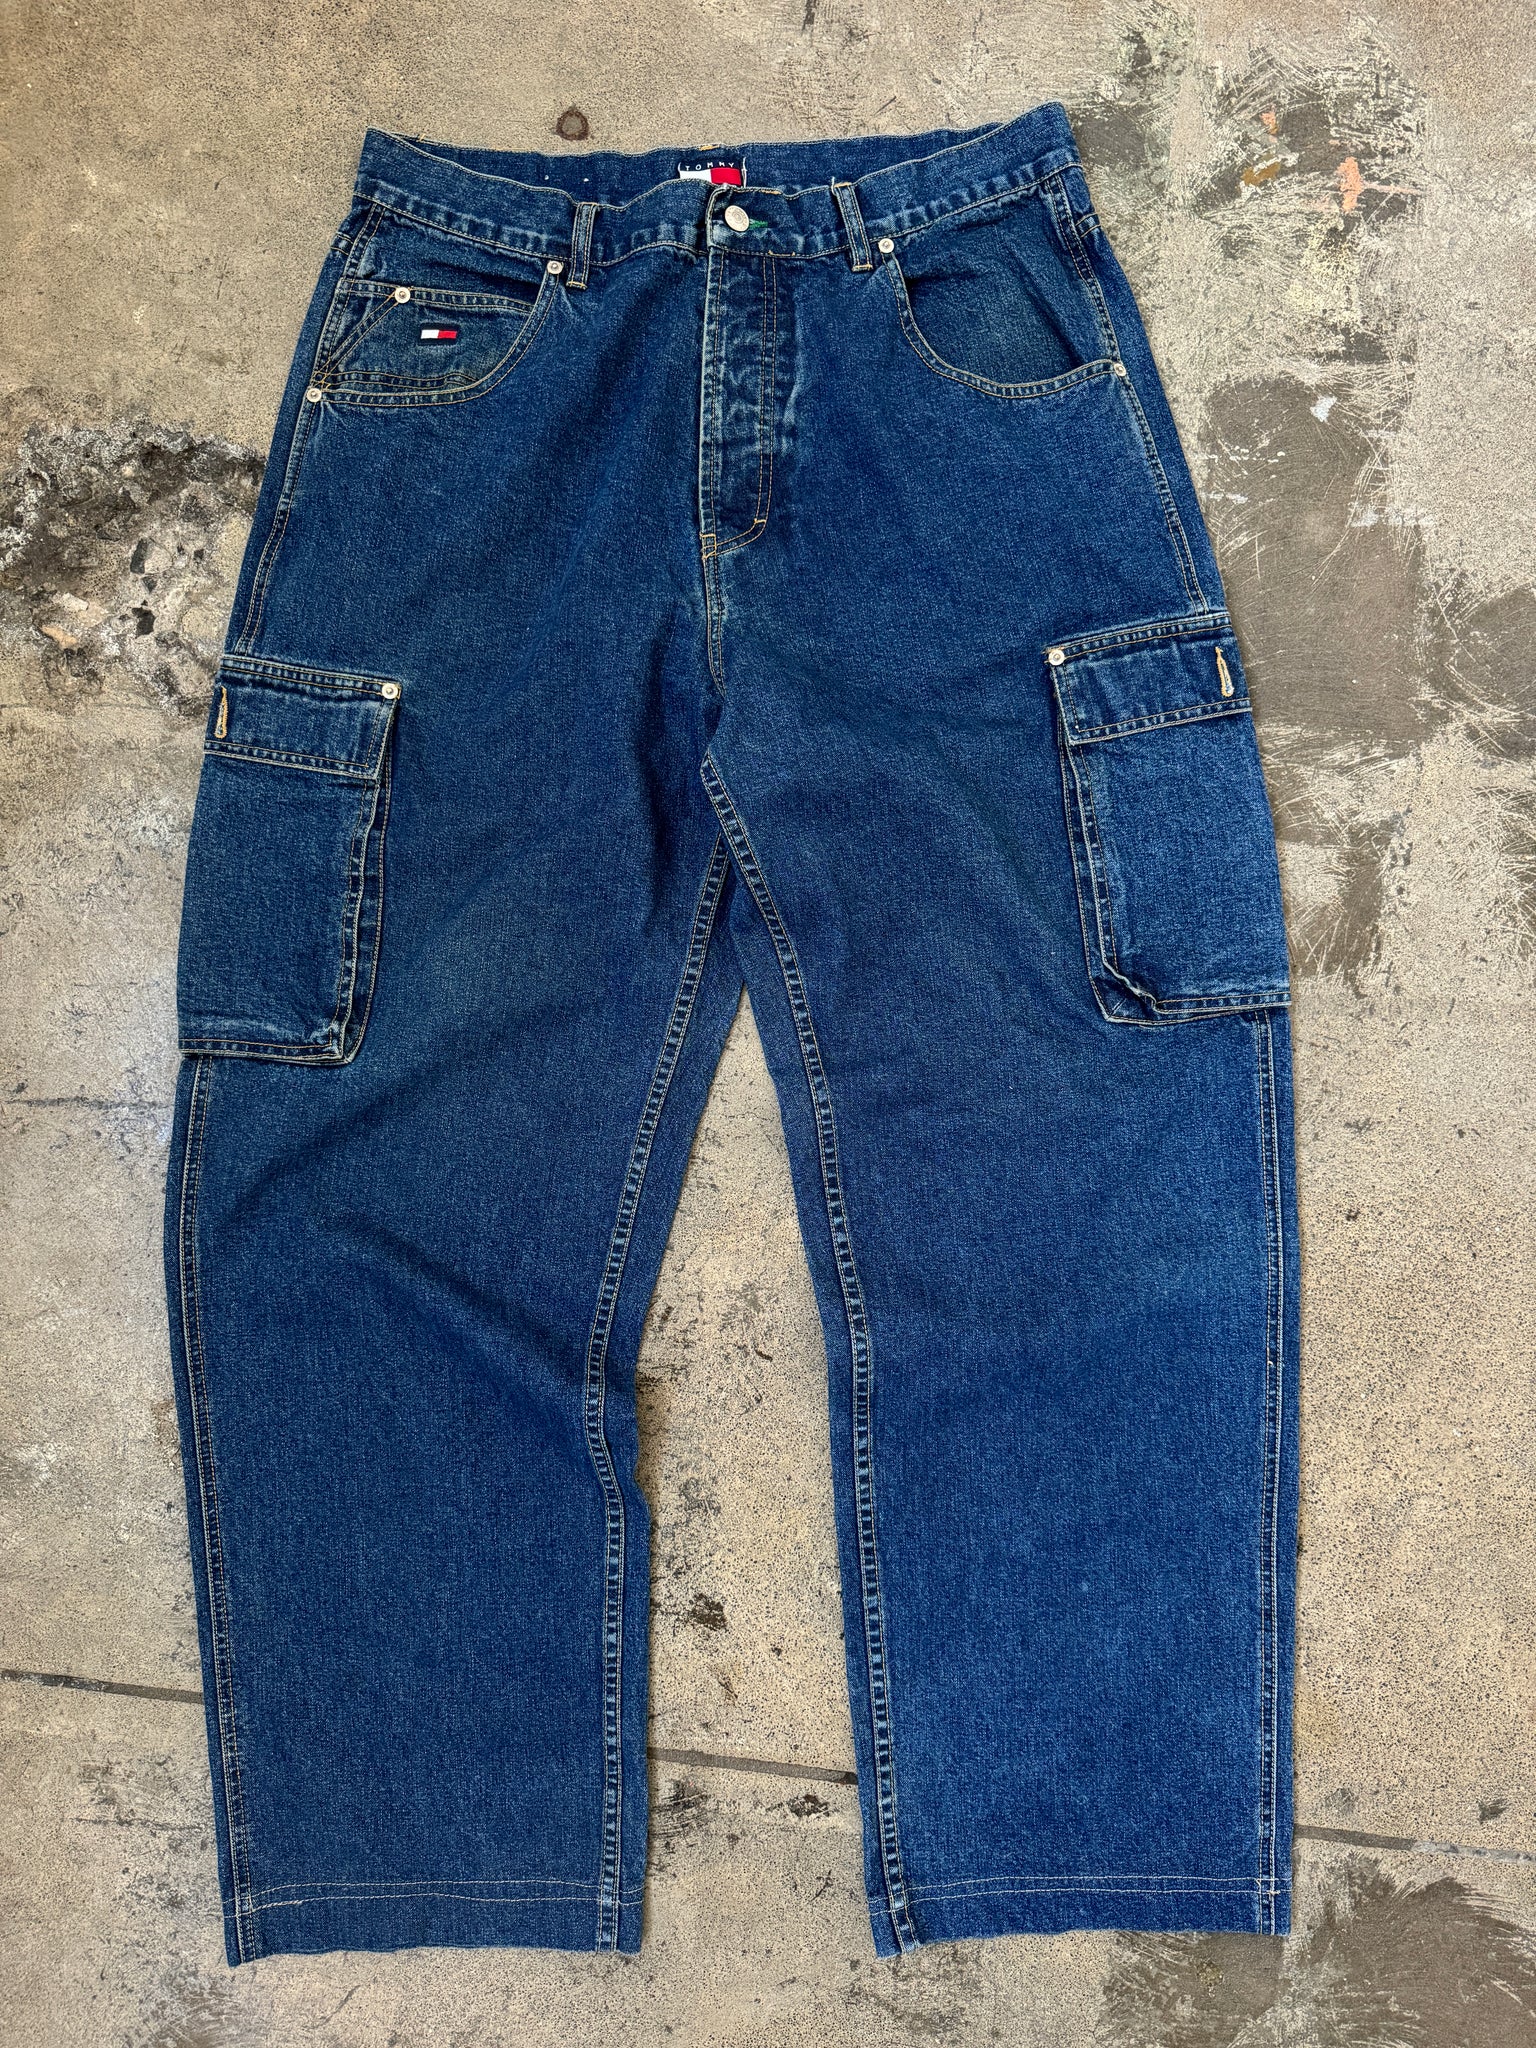 Vintage Tommy Hilfiger Pocket Jeans (36)